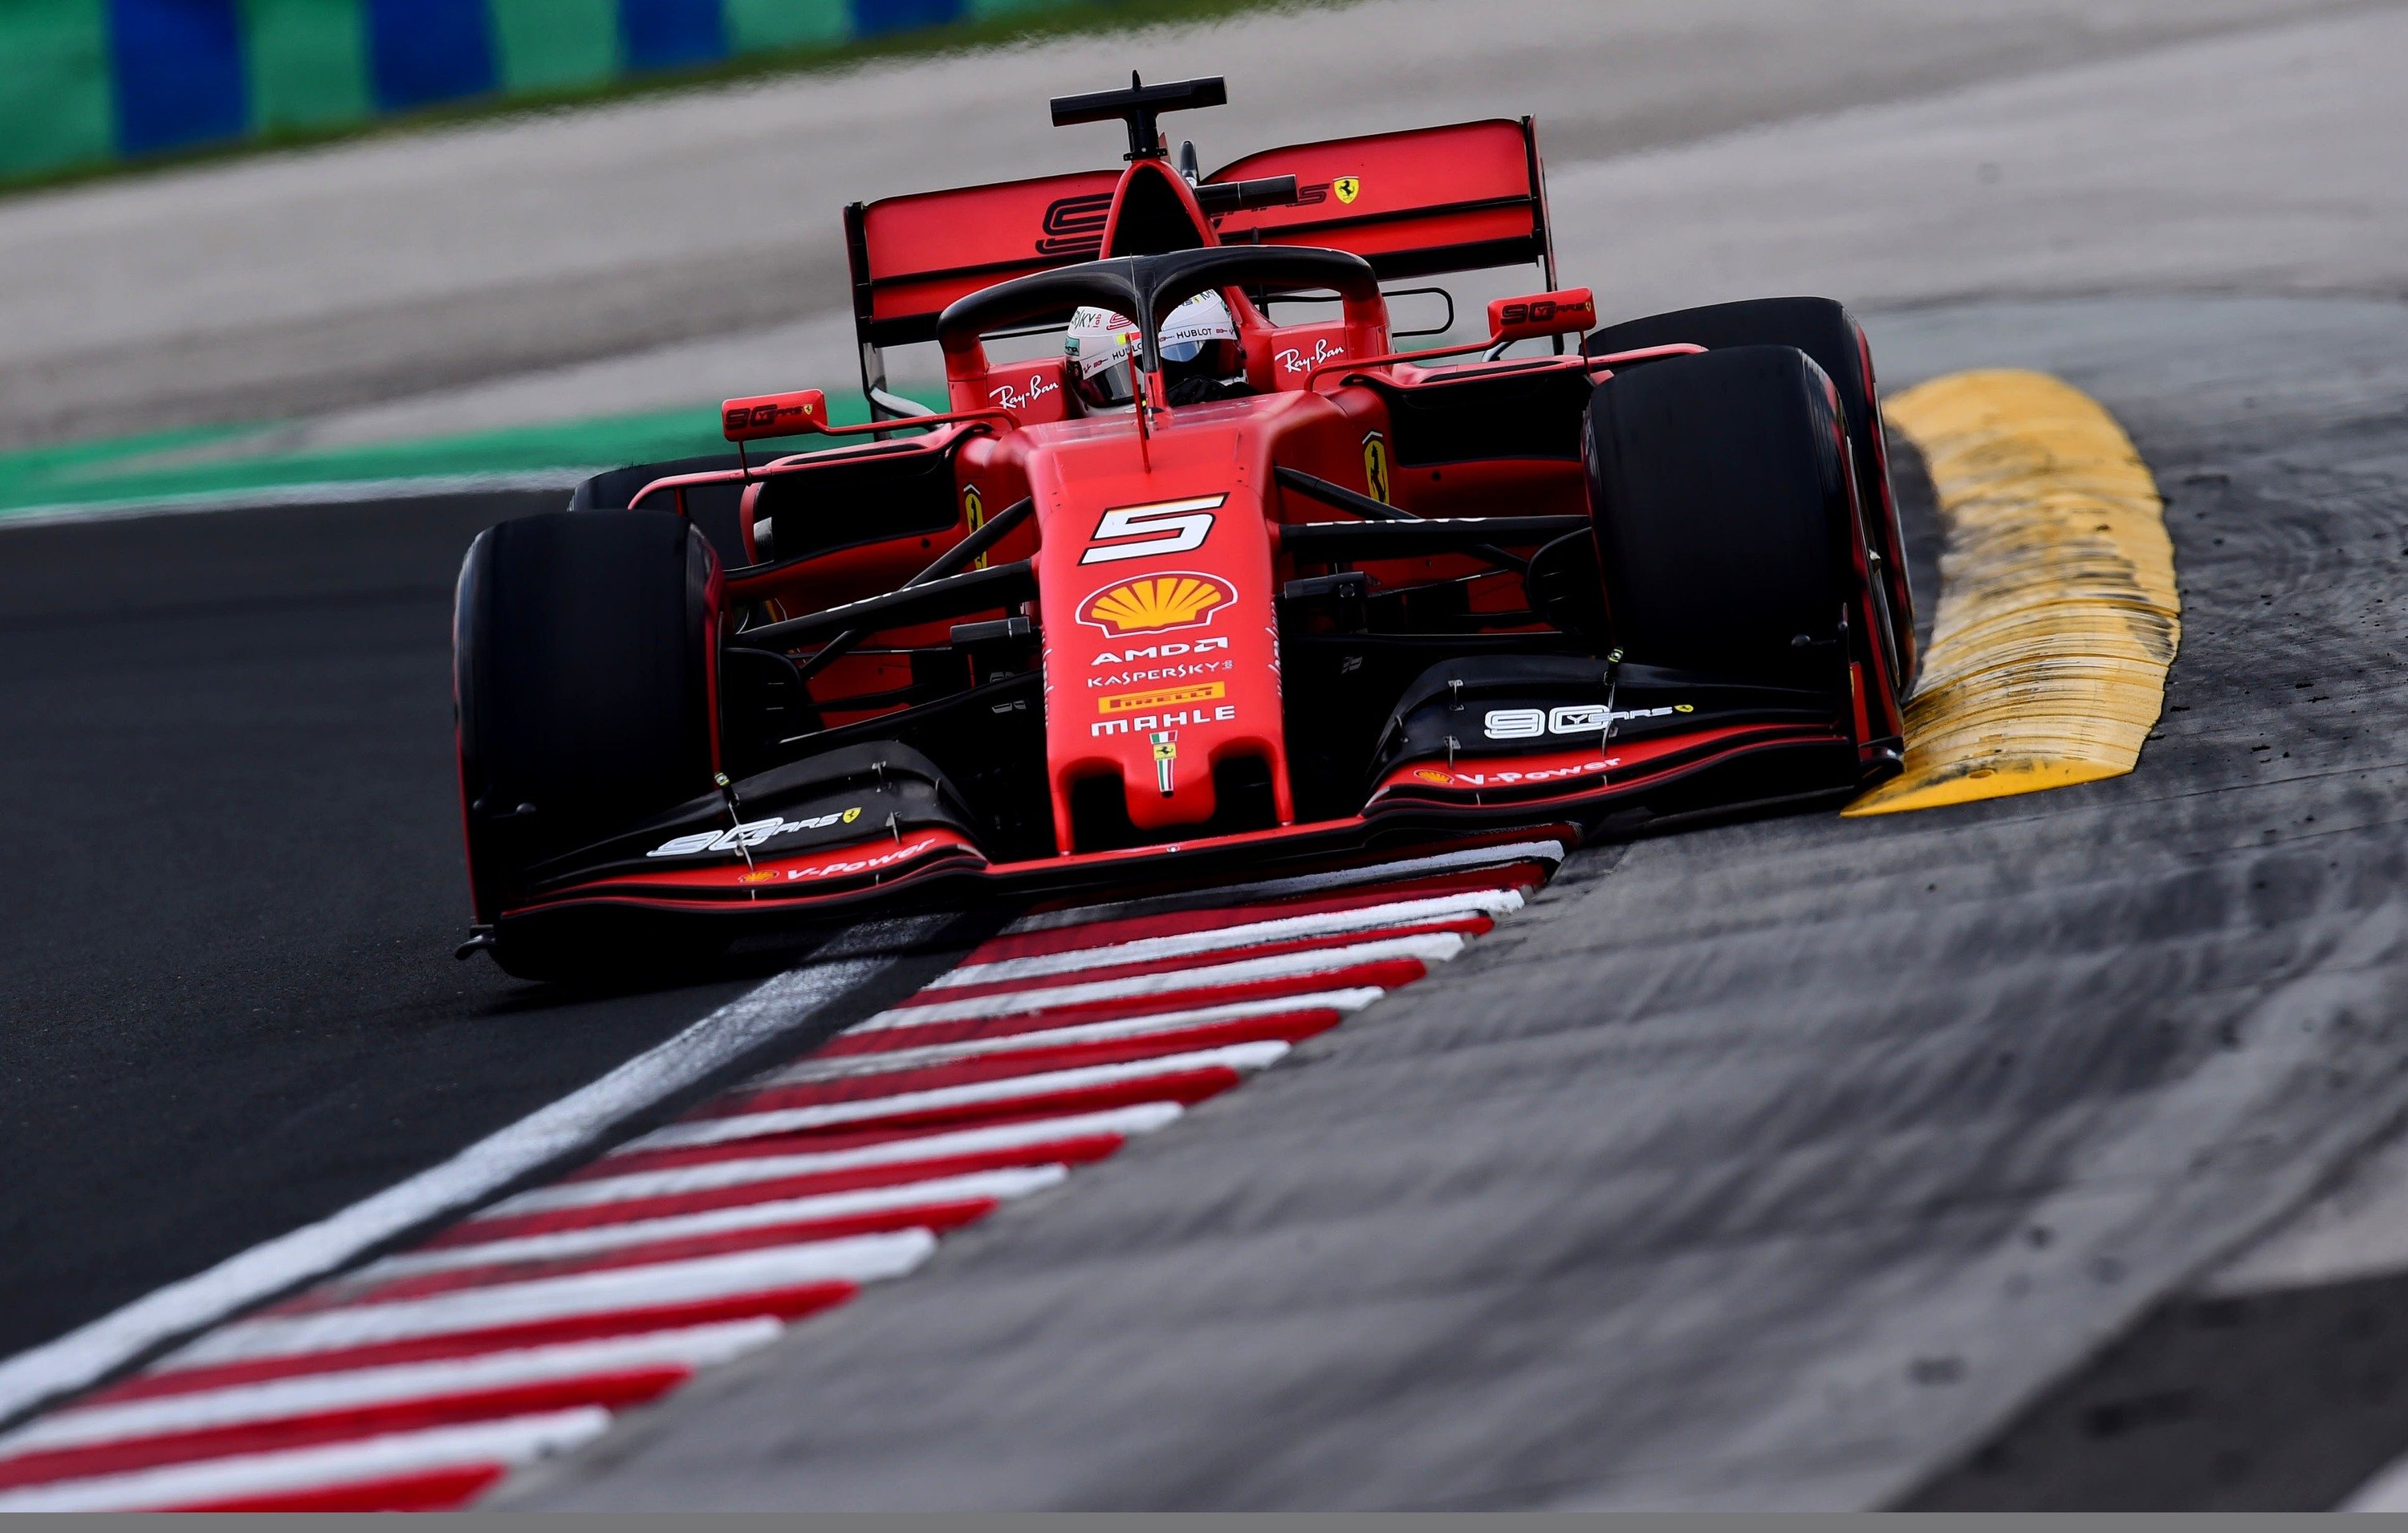 F1, GP Ungheria 2019: Ferrari, quanti problemi